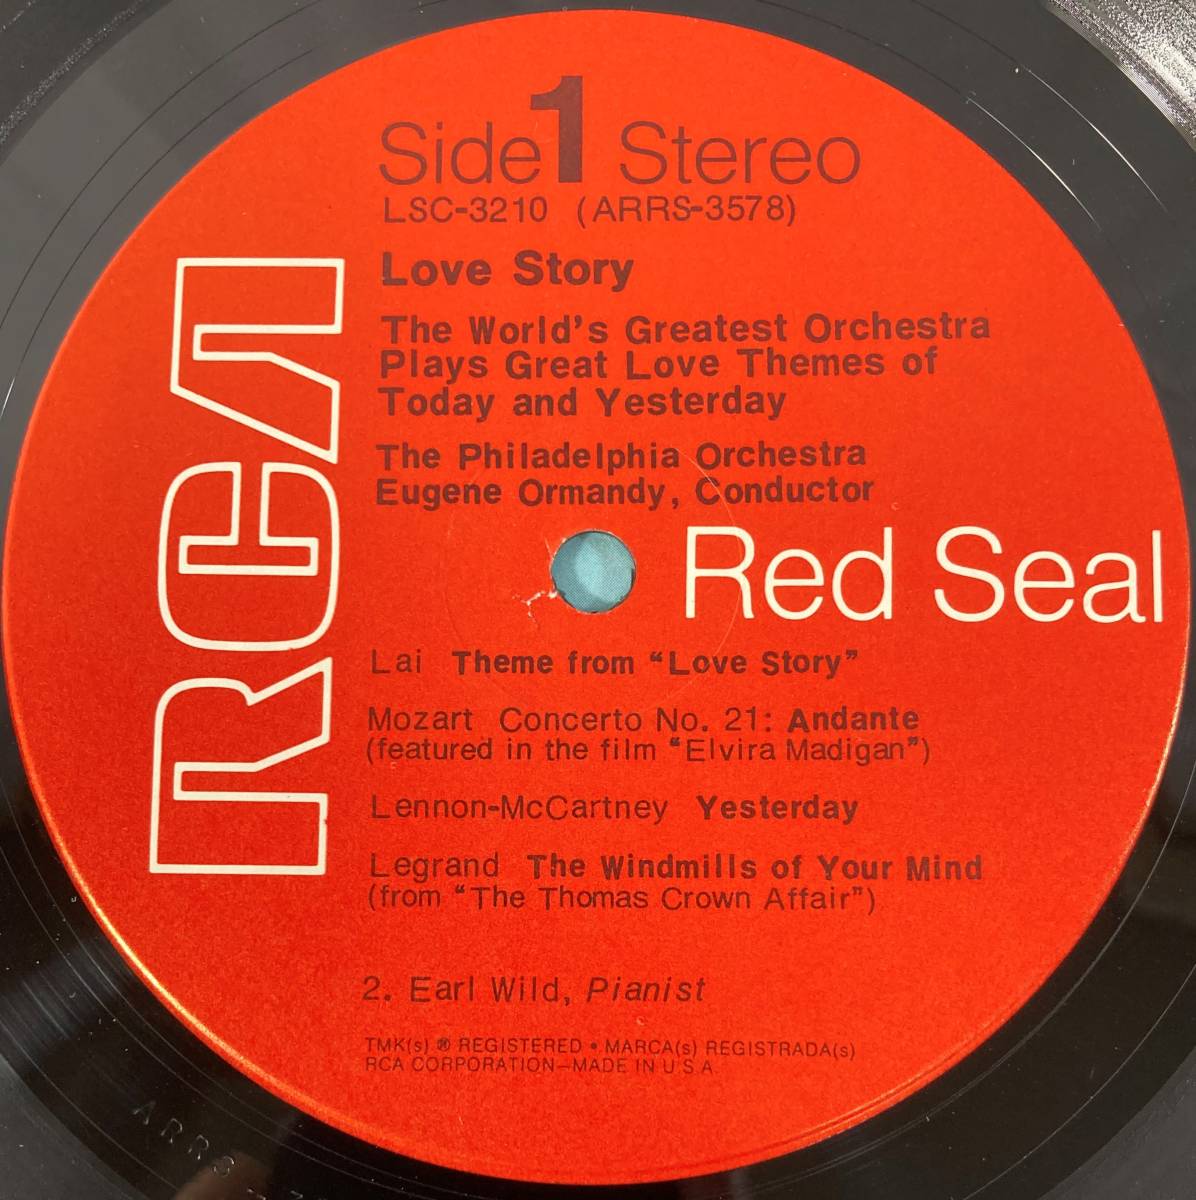 ユージーン・オーマンディ(Eugene Ormandy) conducts The Philadelphia Orch / LOVE STORY 米盤LP RCA LSC-3210 STEREO 未使用に近いの画像4